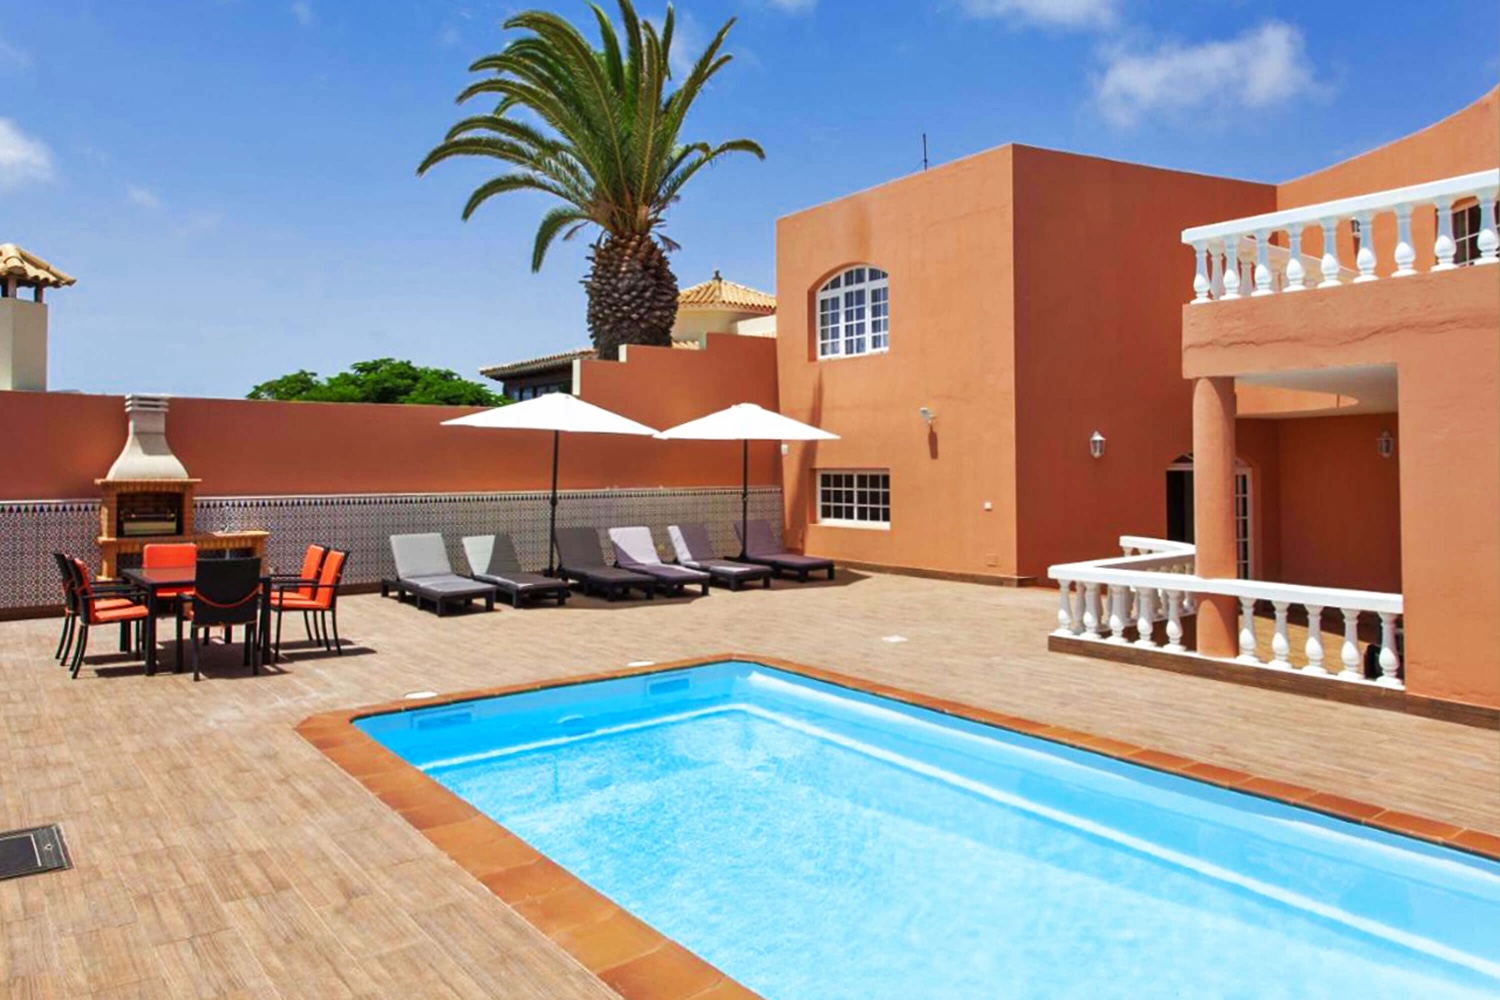 Modern vakantiehuis met privézwembad voor een ontspannen strandvakantie in Caleta de Fuste